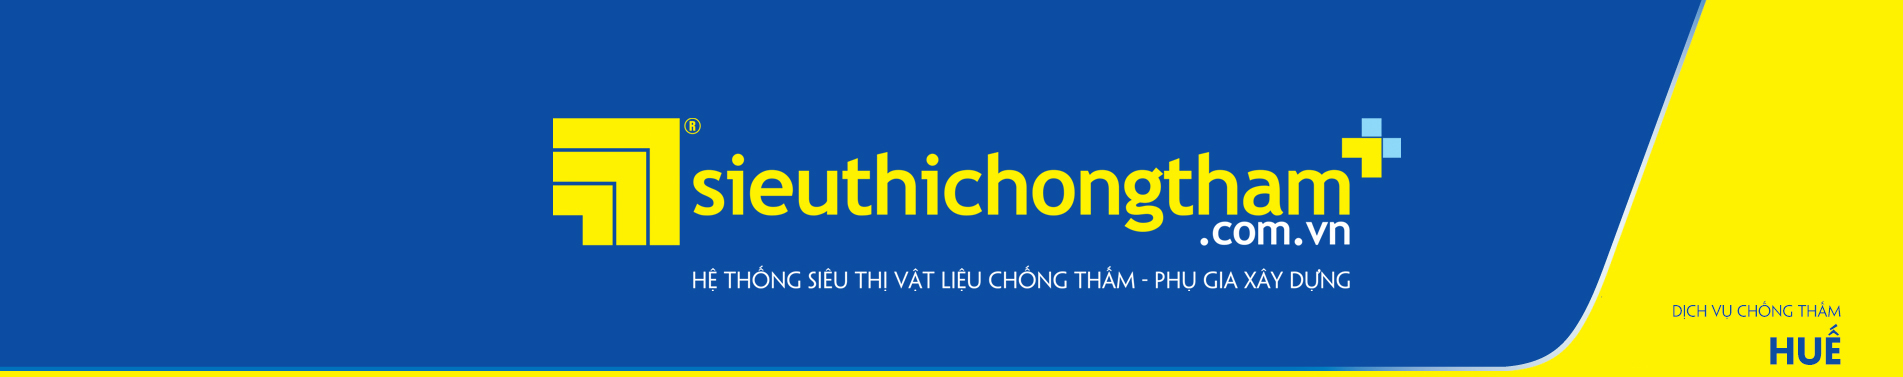 Dich Vu Chong Tham Hue